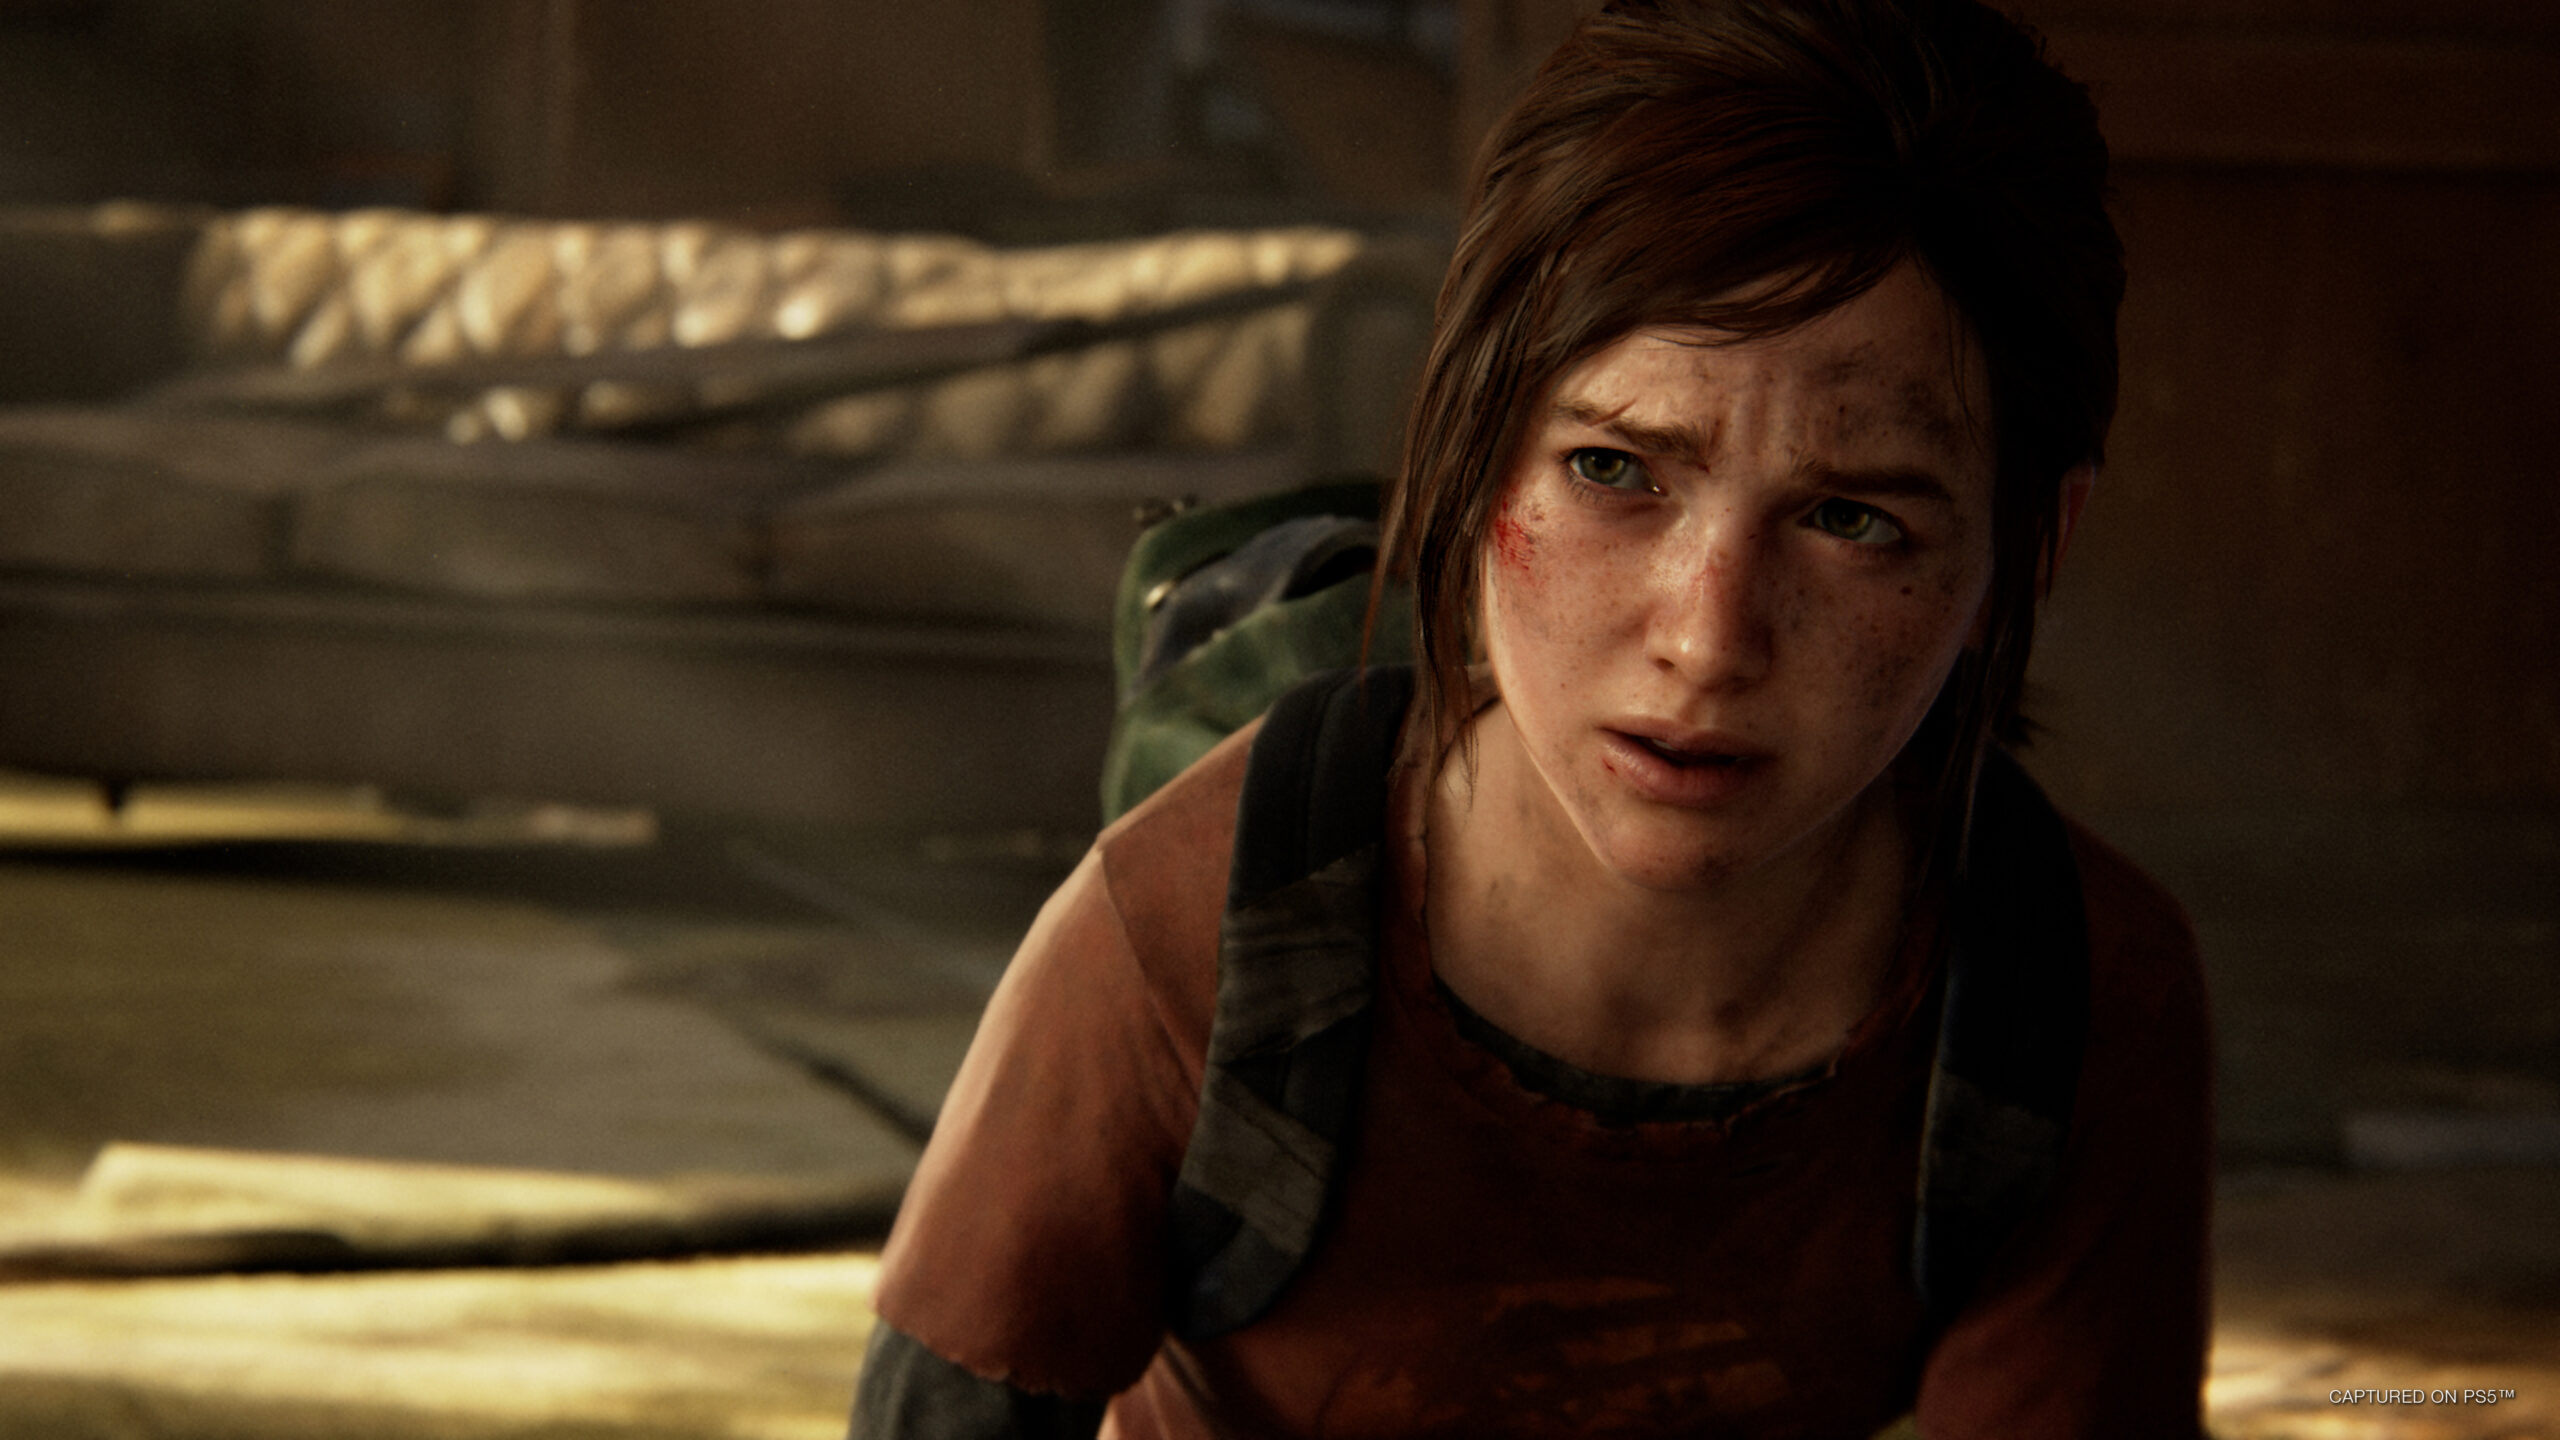 The Last of Us Parte 1 en PC: El estado actual